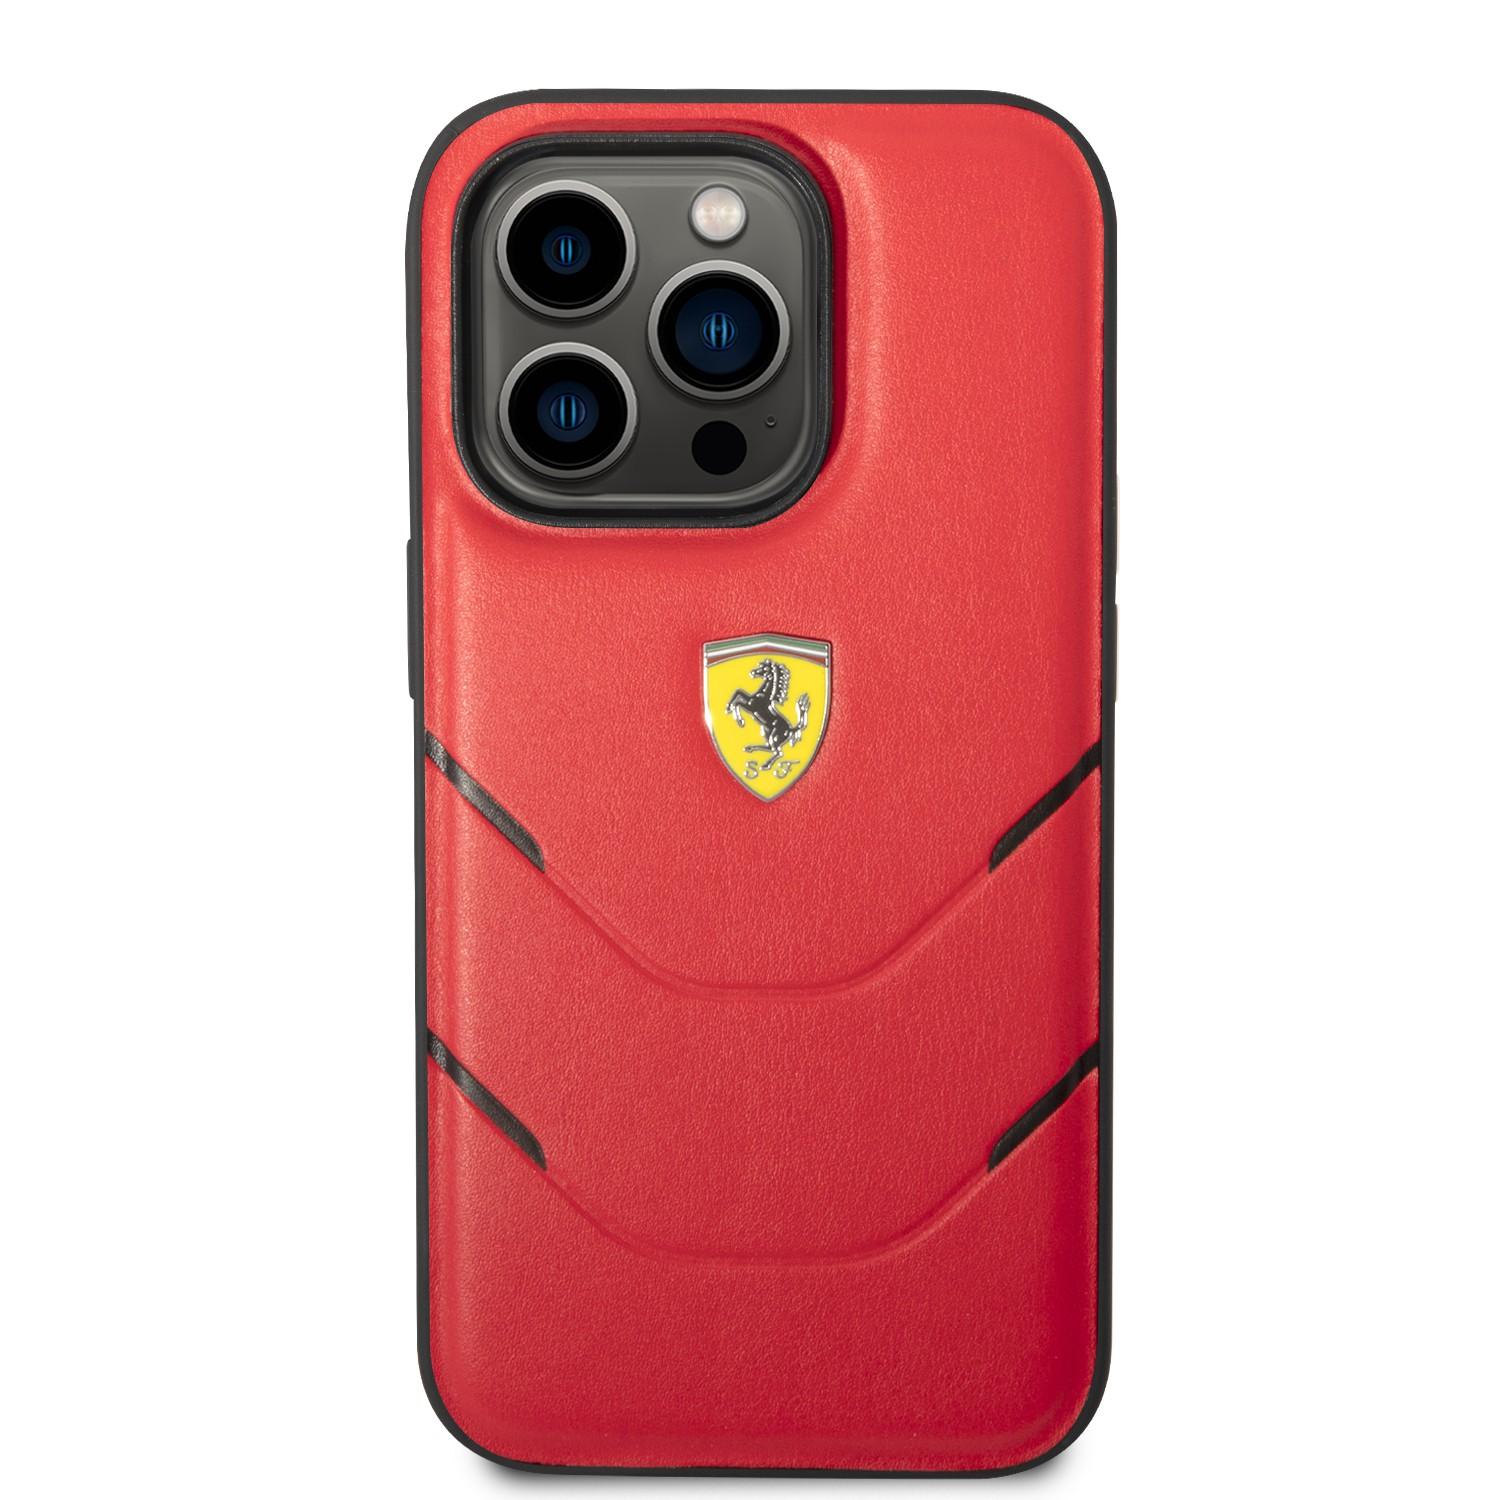 كفر ايفون 14 برو ماكس سيلكون بولي يوثرين هوت ستامب فيراري أحمر Ferrari PU Hot Stamp Lines Hard Case - cG9zdDoxMzY4ODcz